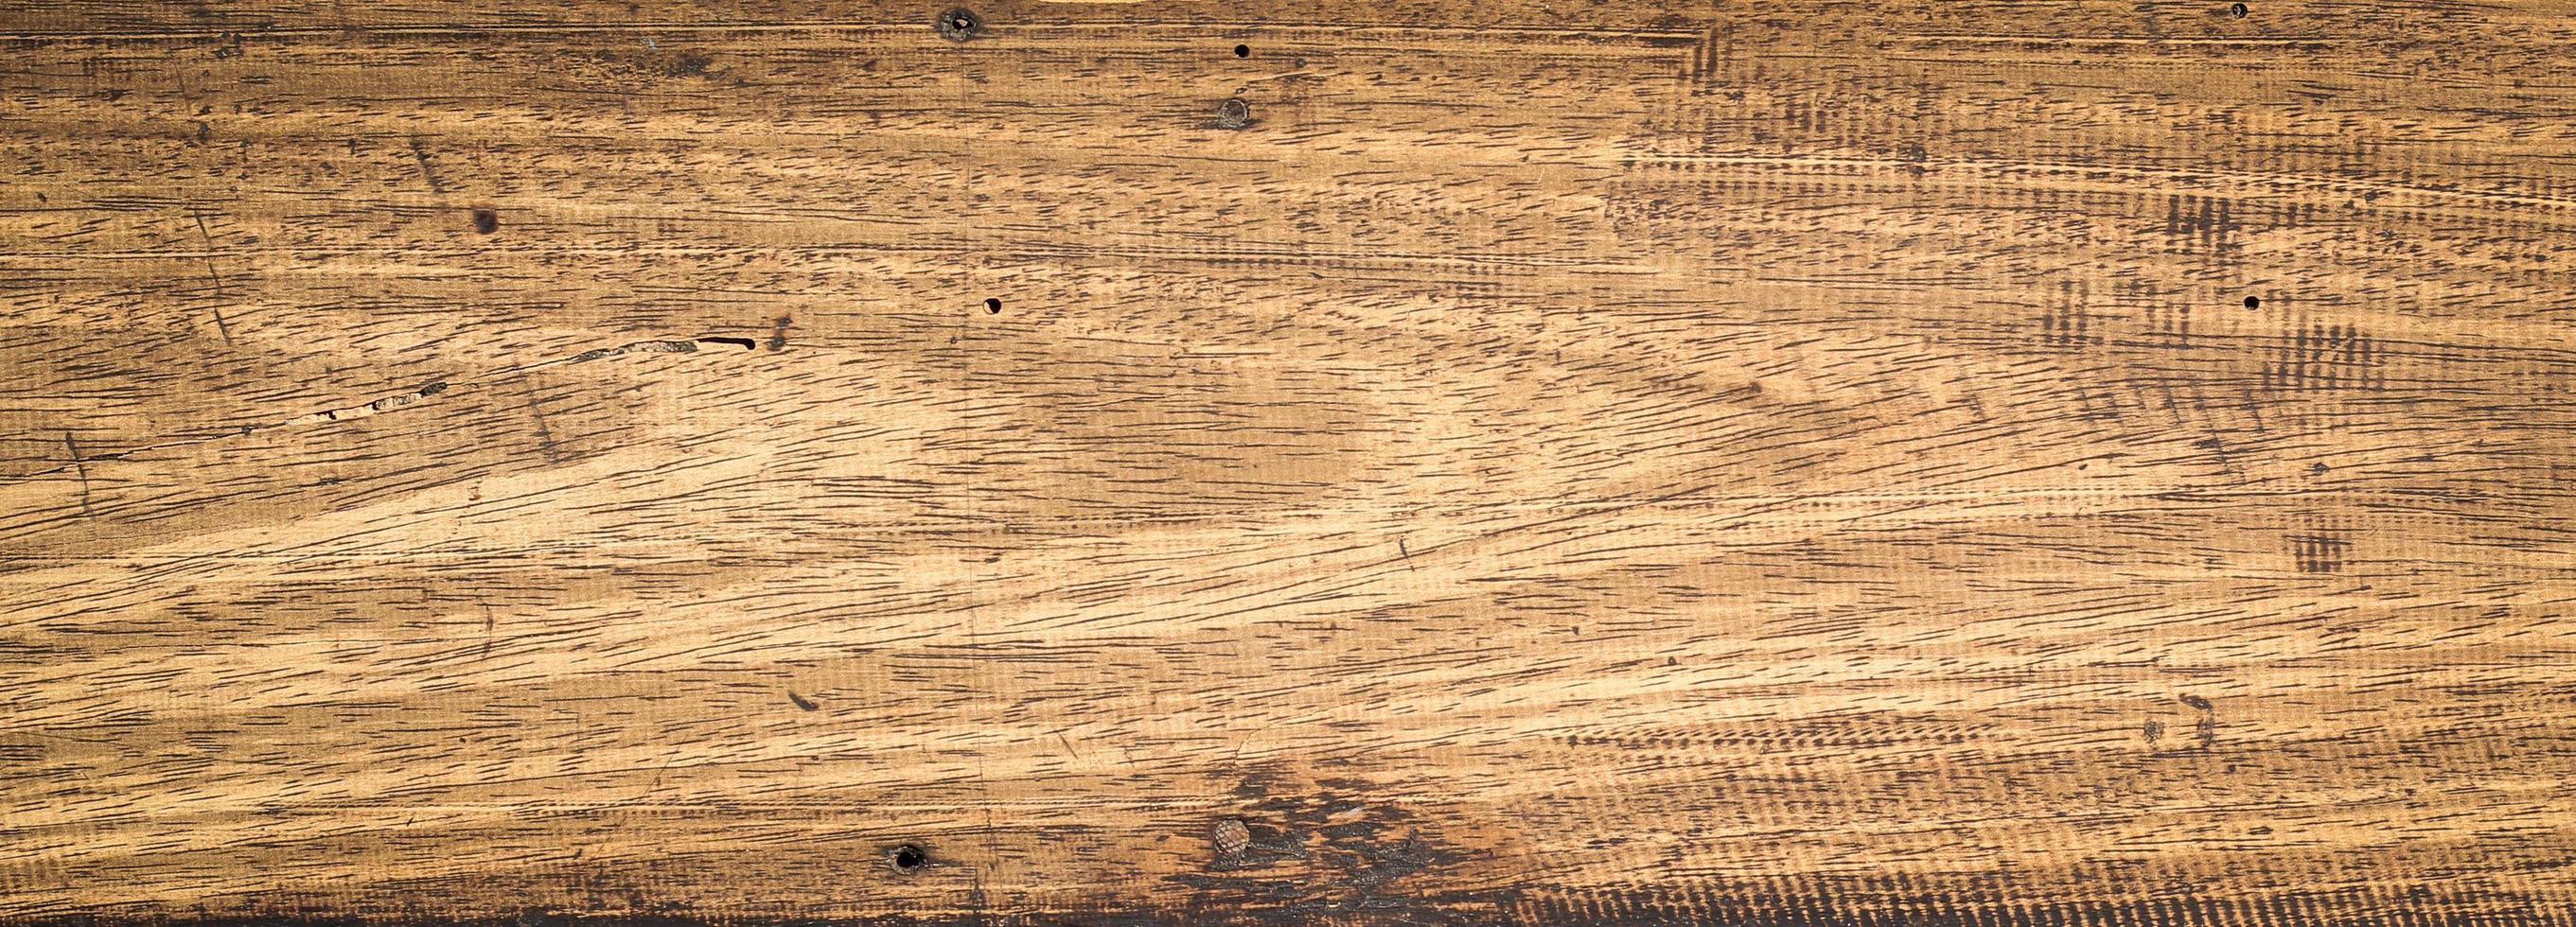 texture du bois, fond de planches de bois et vieux bois. photo